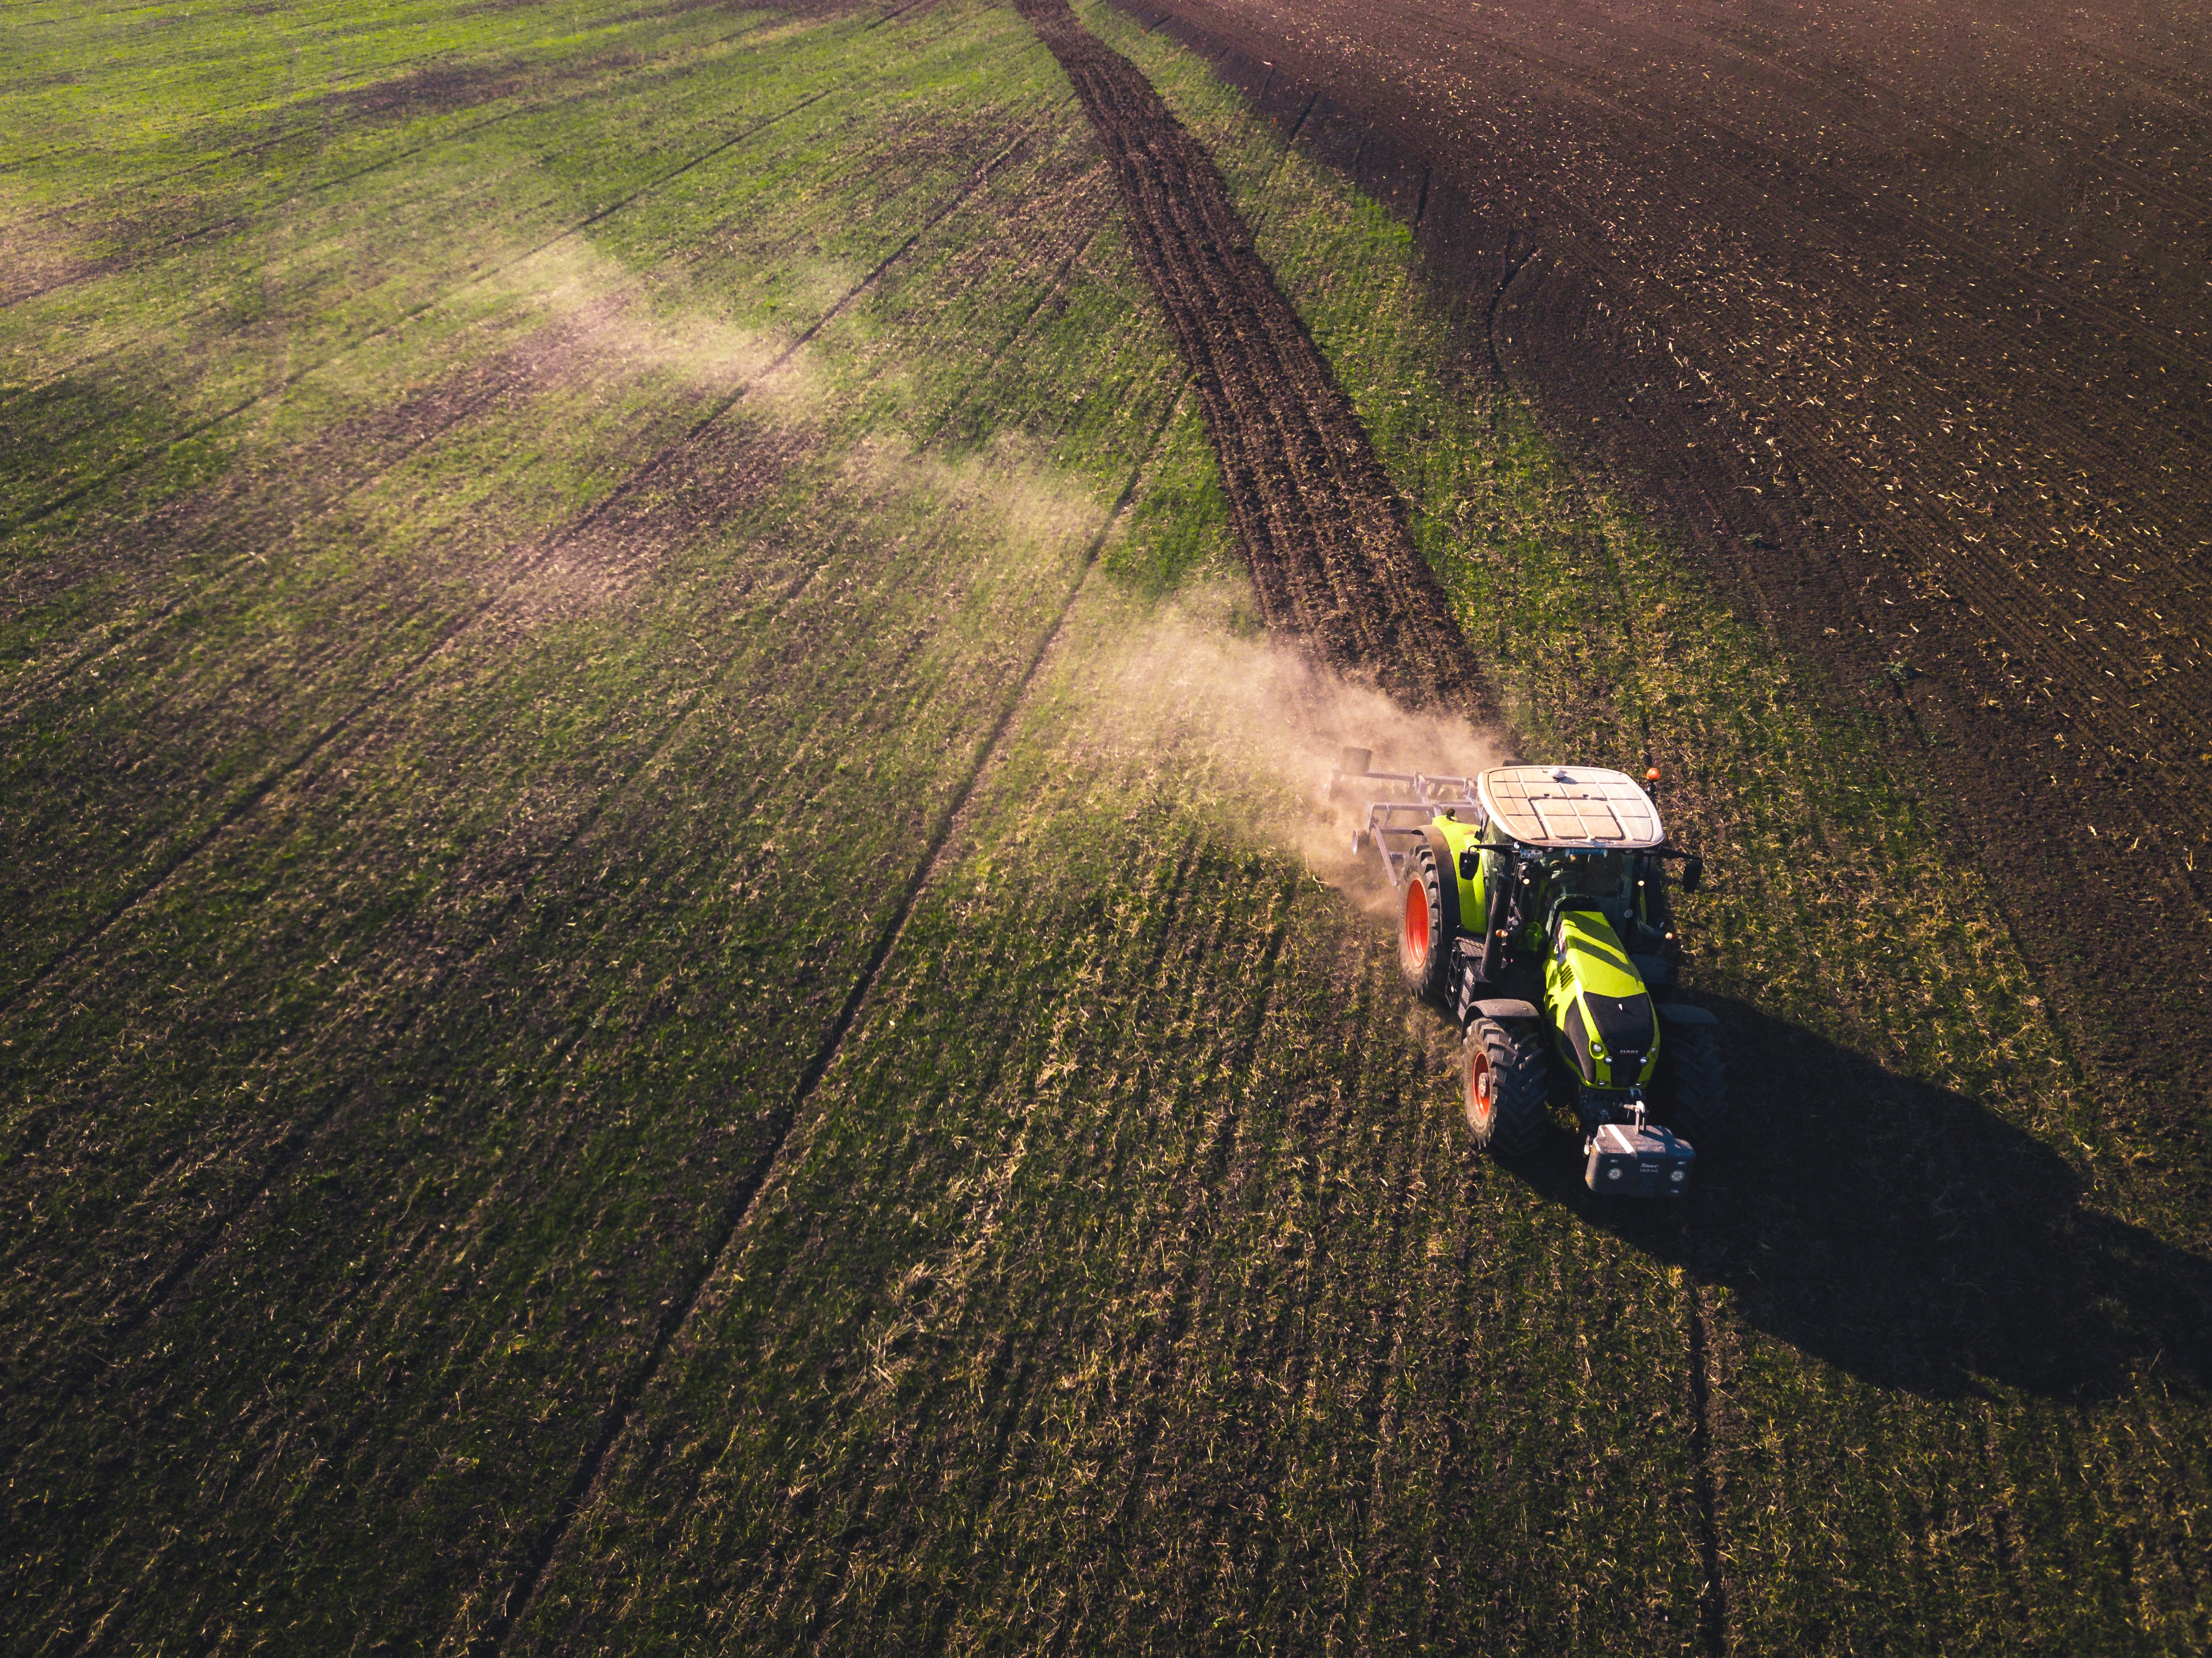 Huawei lidera el avance del 5G en la España rural. Fotografía de un tractor cosechando, de Chris Ensminger en Unsplash.